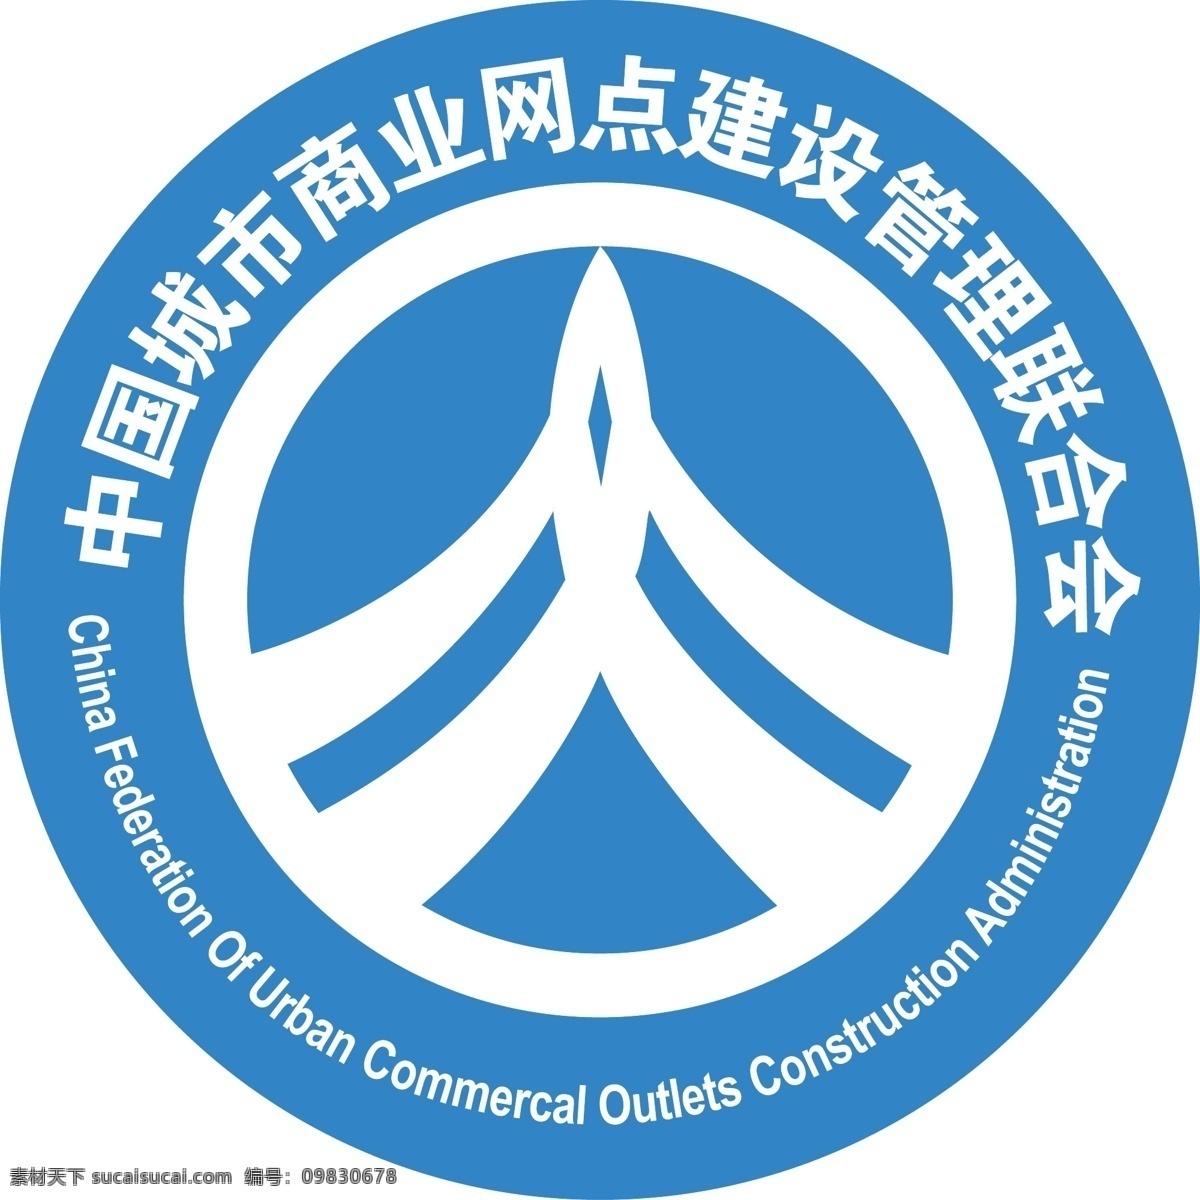 中国 城市 商业网点 建设管理 联合会 logo 联合会标志 企业logo 企业 标志 标识标志图标 矢量